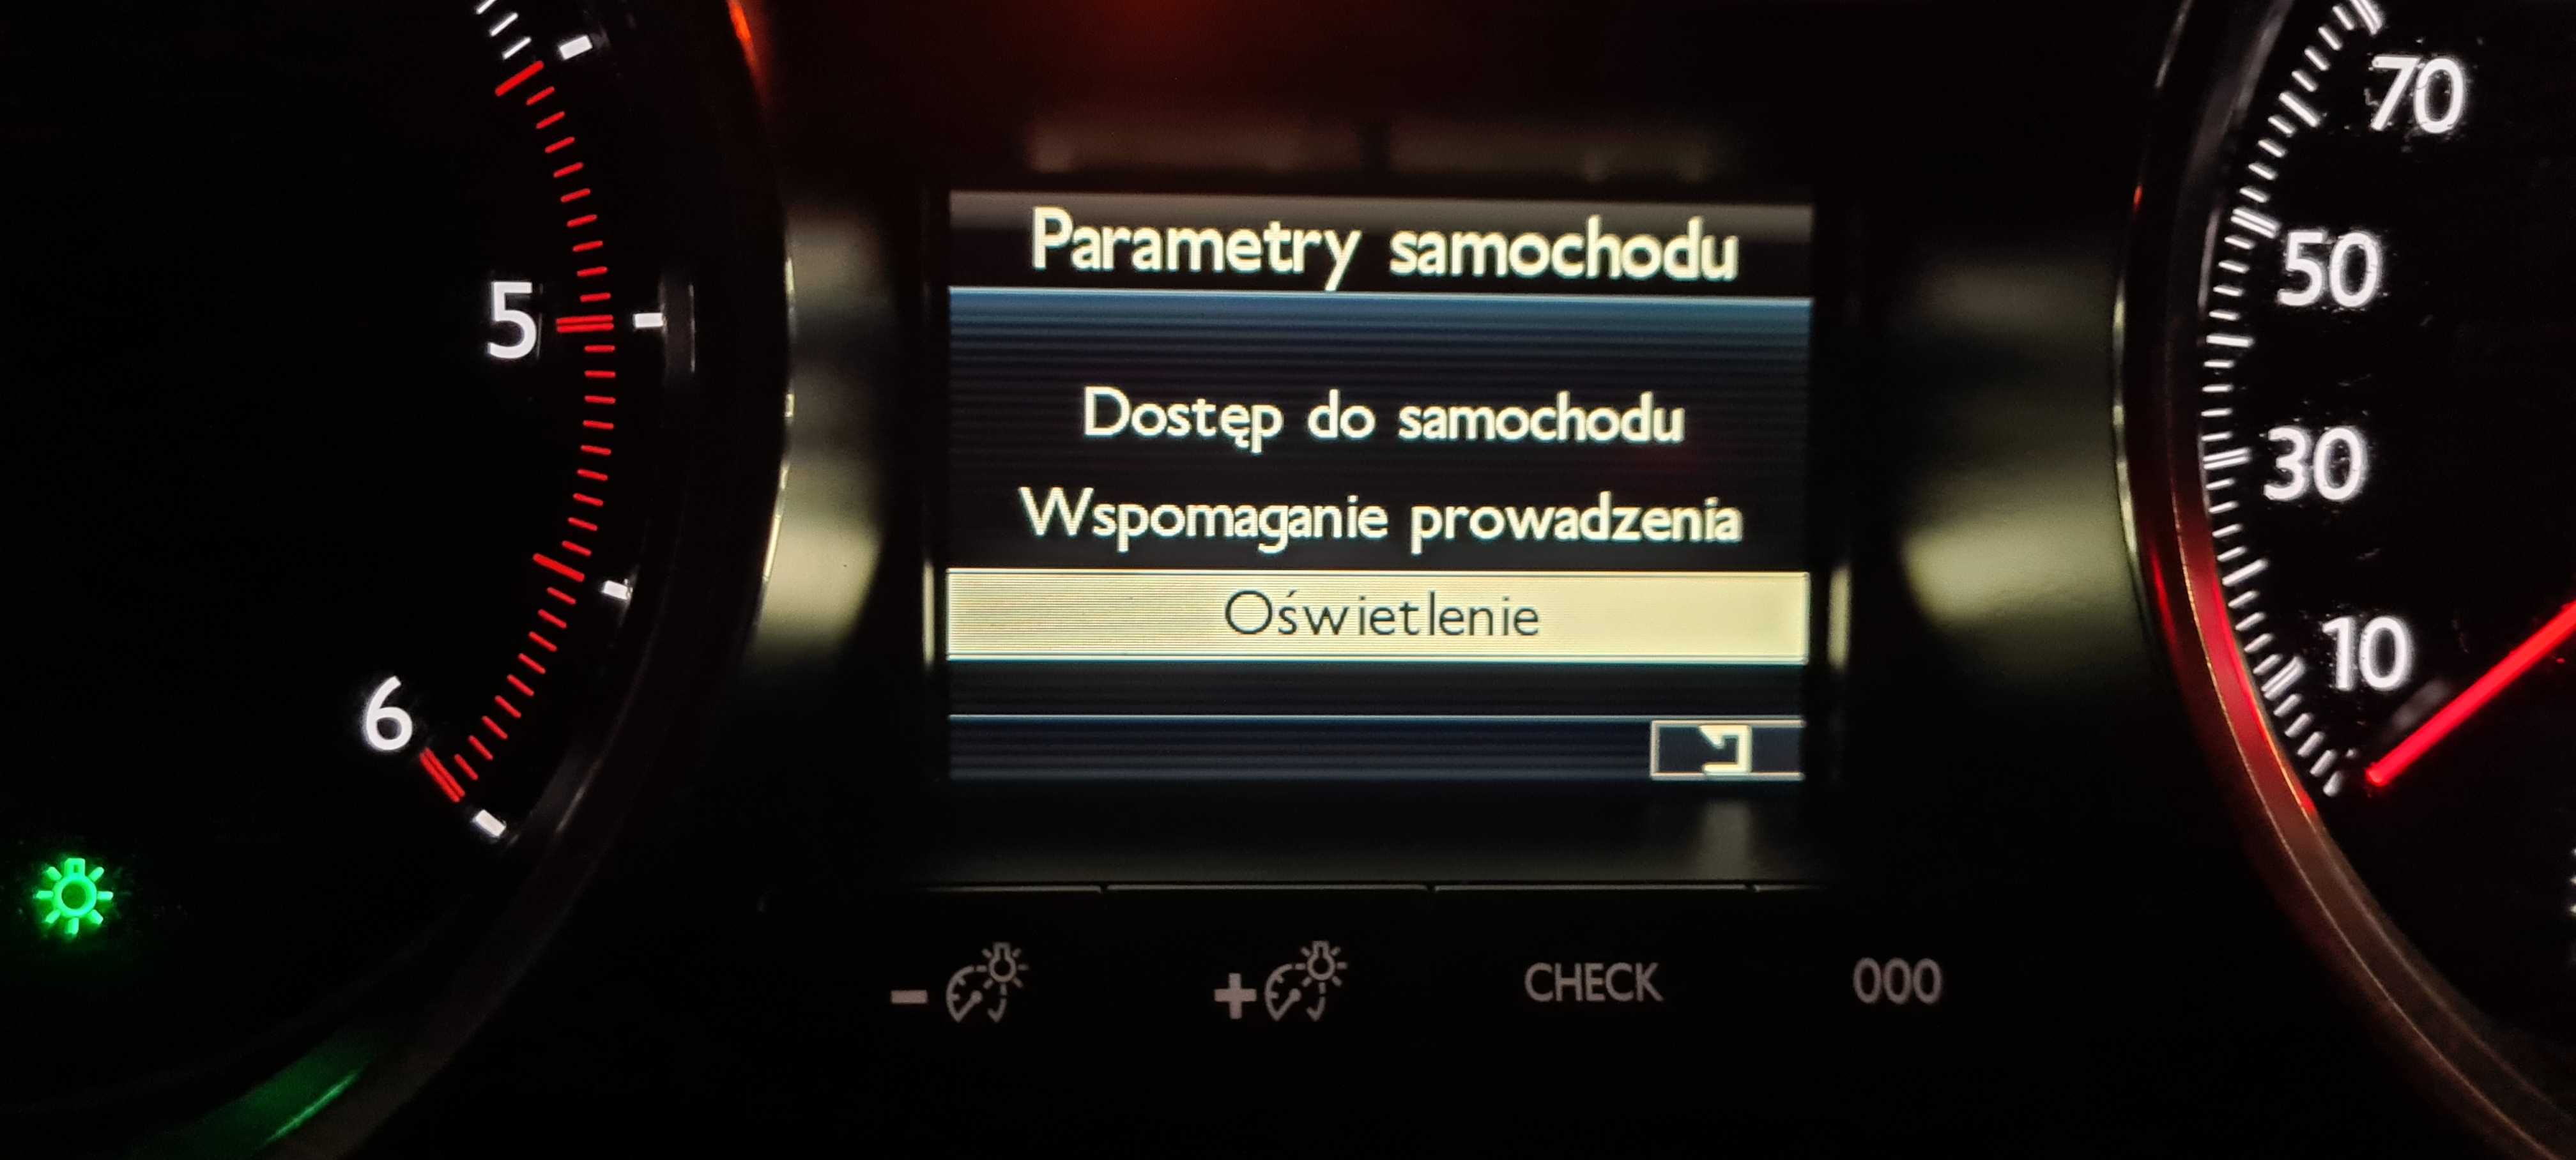 KOLOROWY Wyświetlacz licznika Peugeot 508 / DS5 - NOWY + KODOWANIE